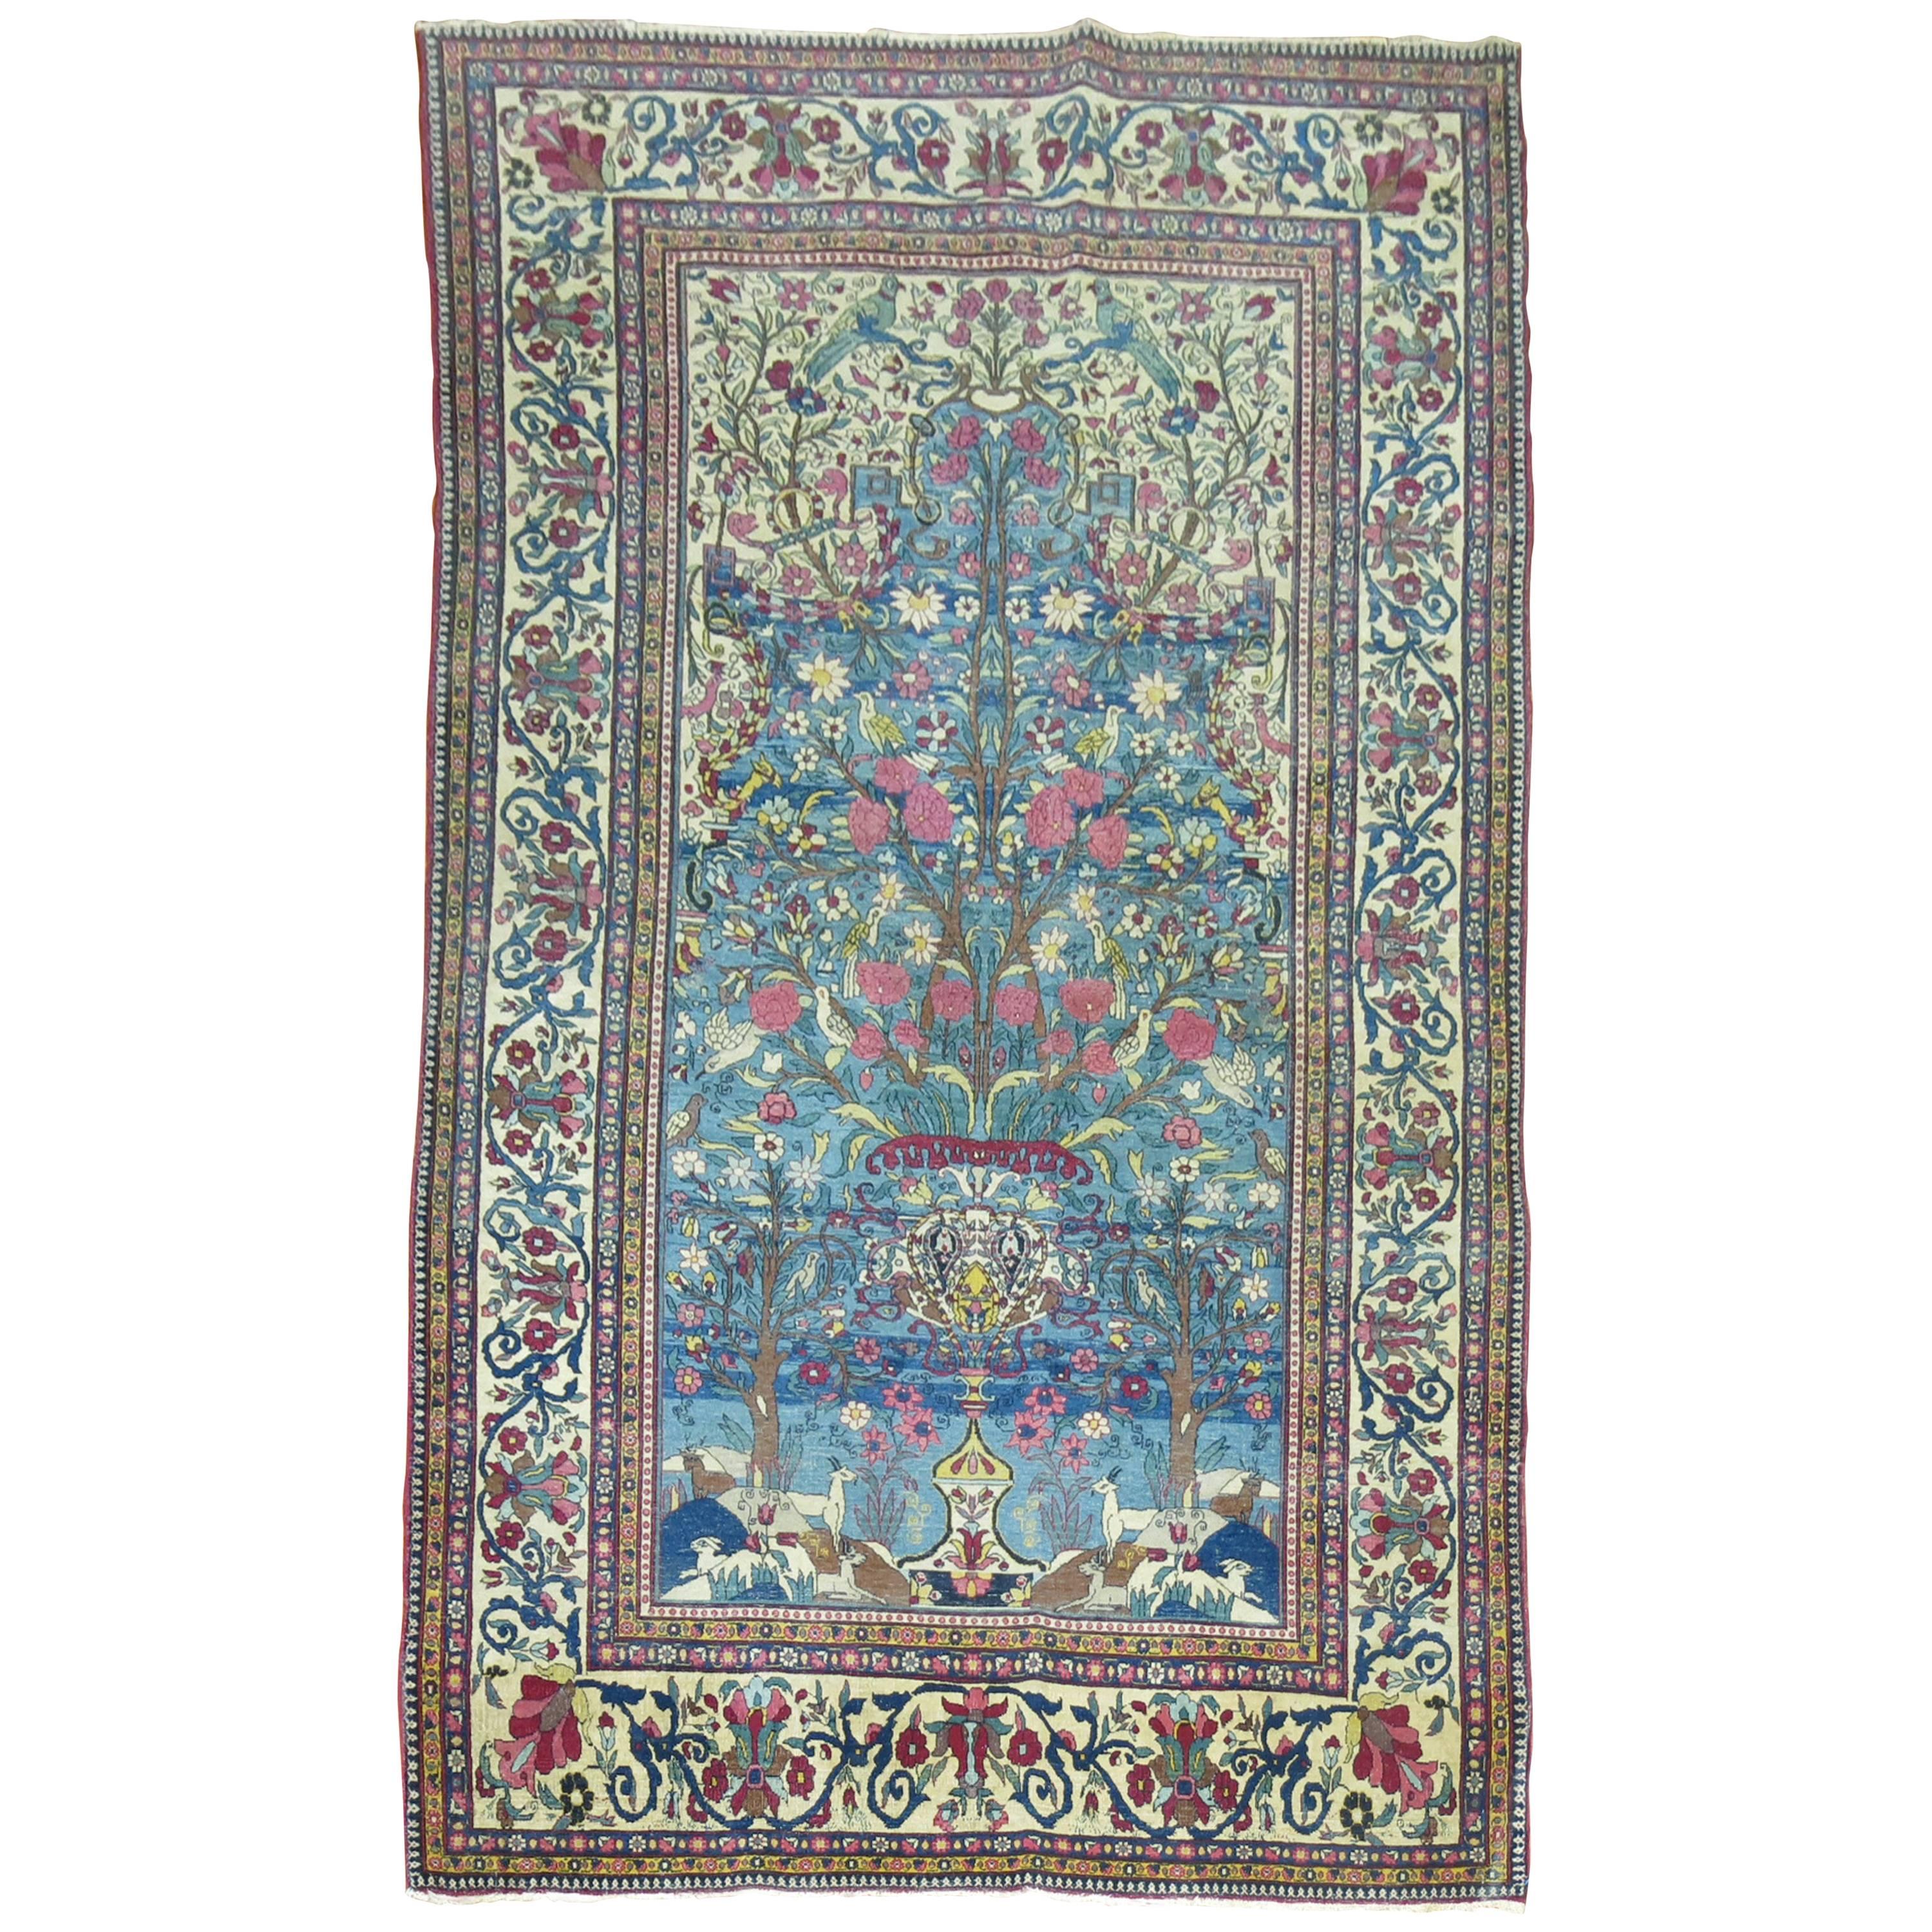 Pictorial Persian Isfahan Prayer Carpet